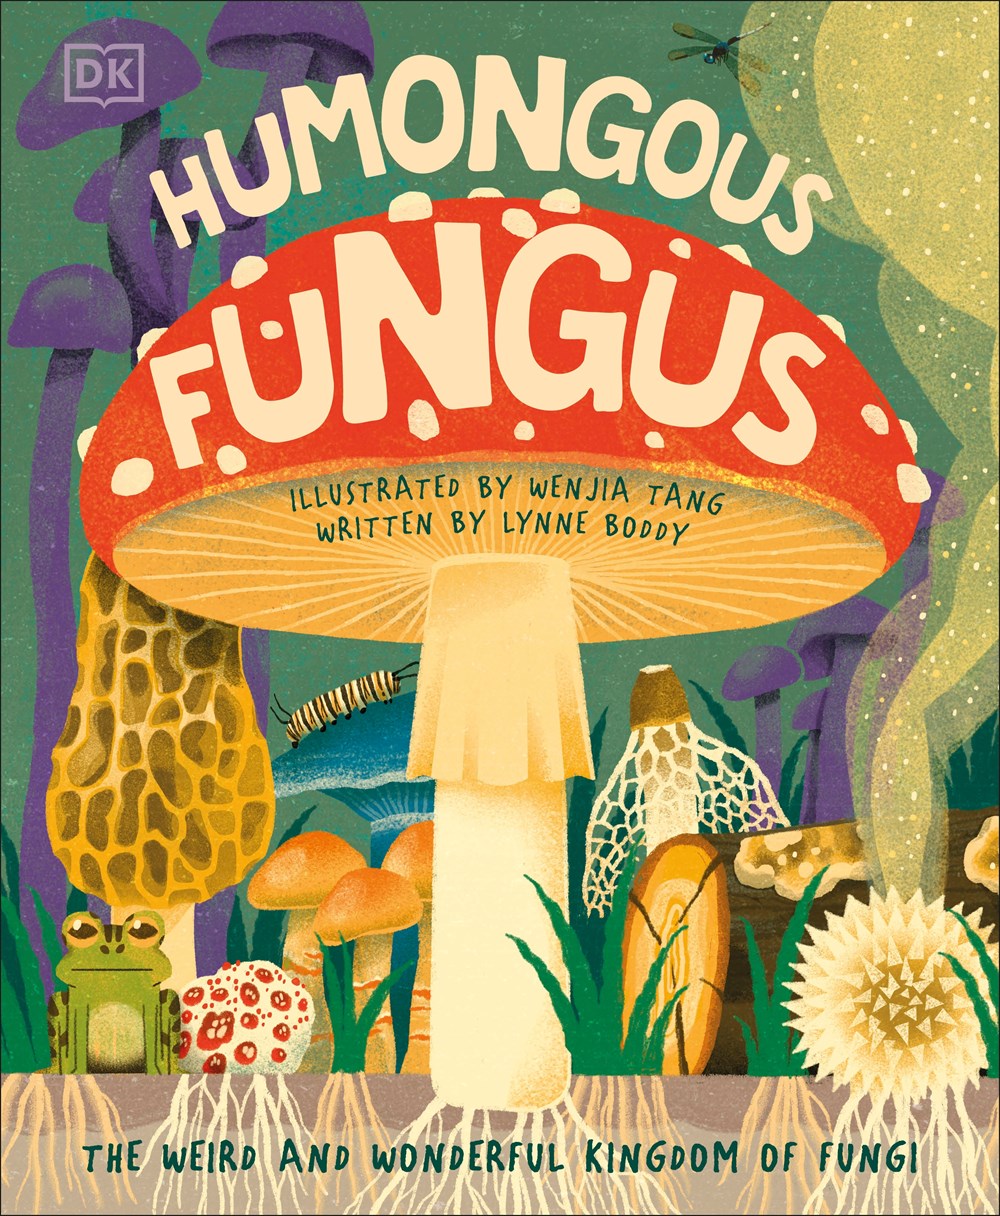 Humongous Fungus (Underground and All Around)